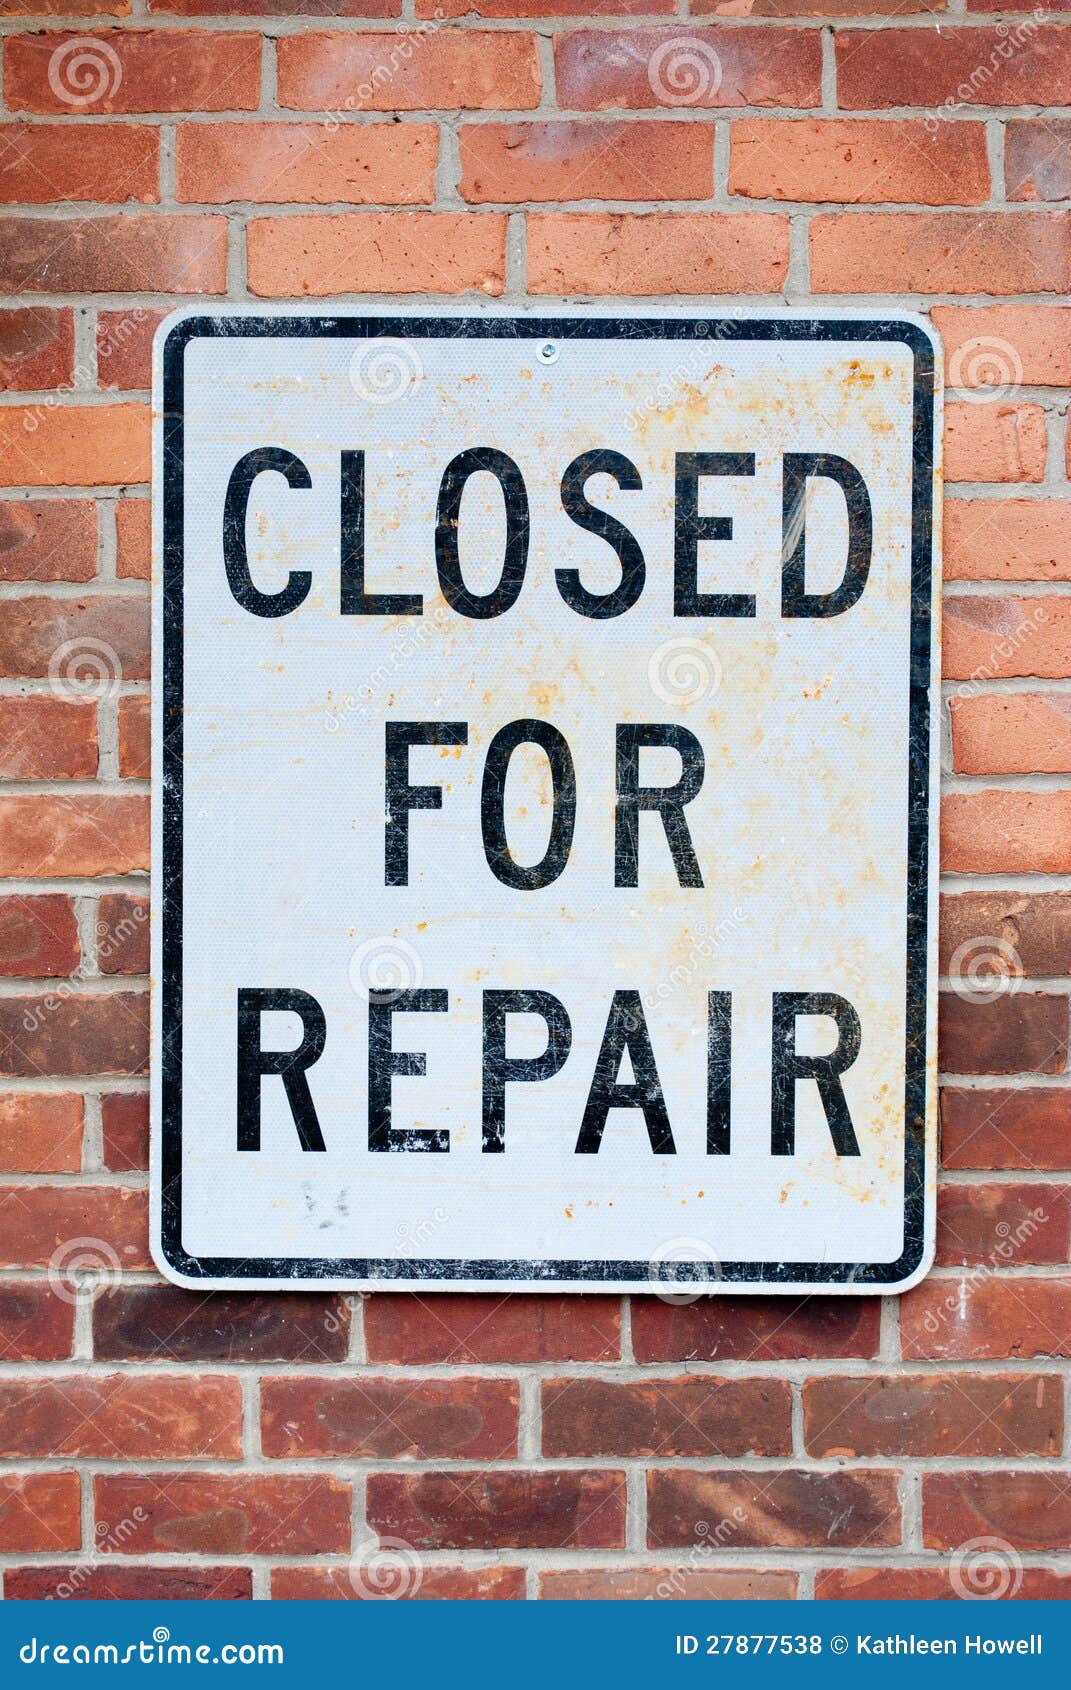 closed for repair